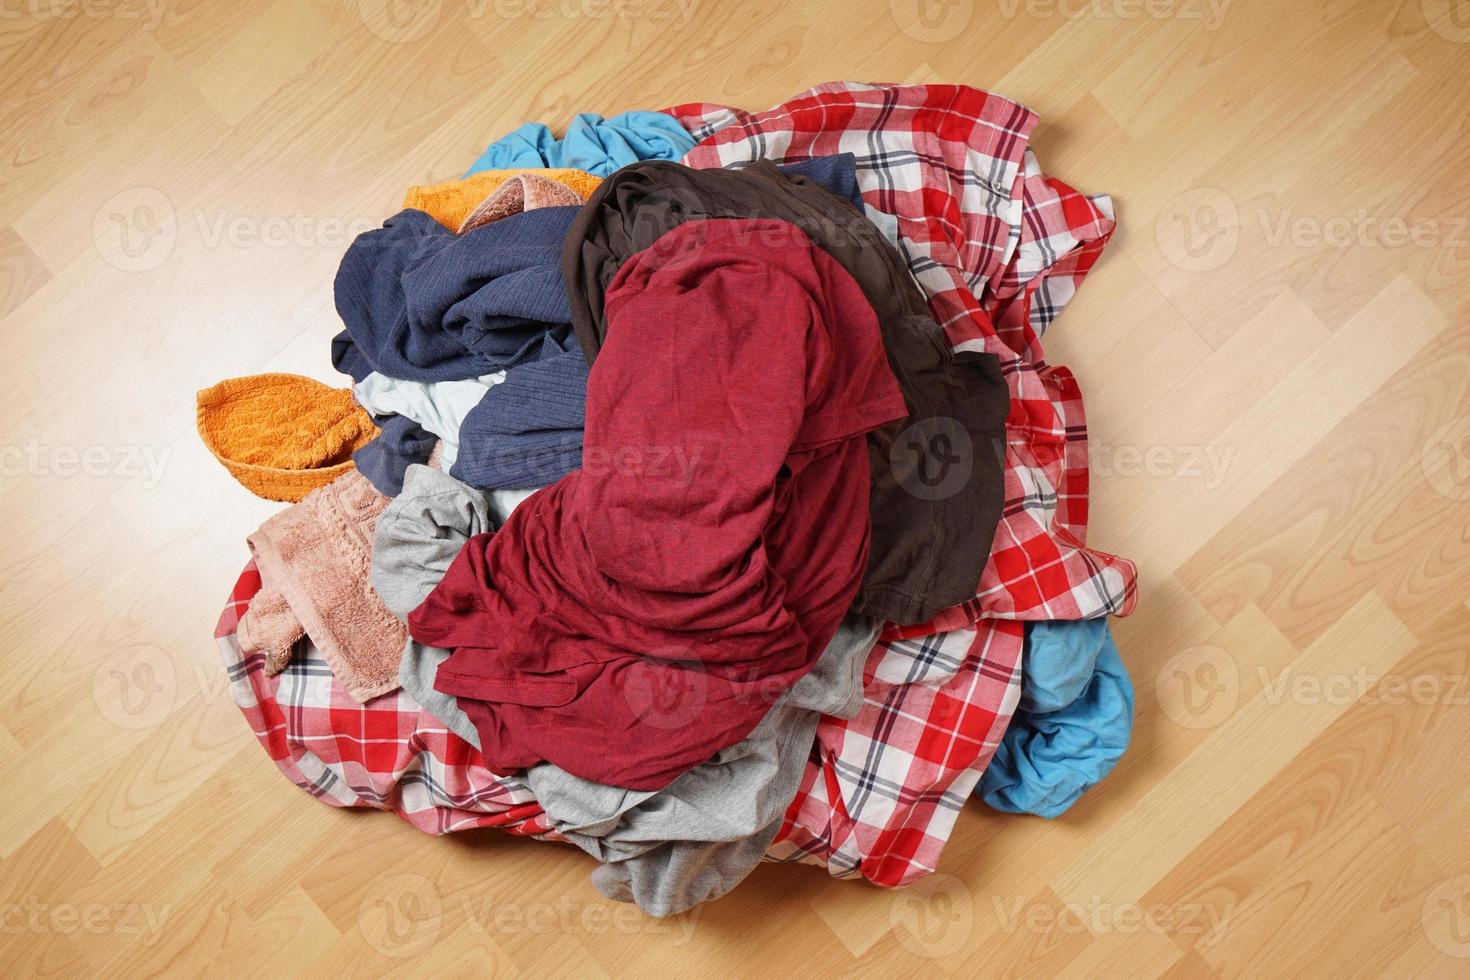 pila de ropa sucia en el piso foto